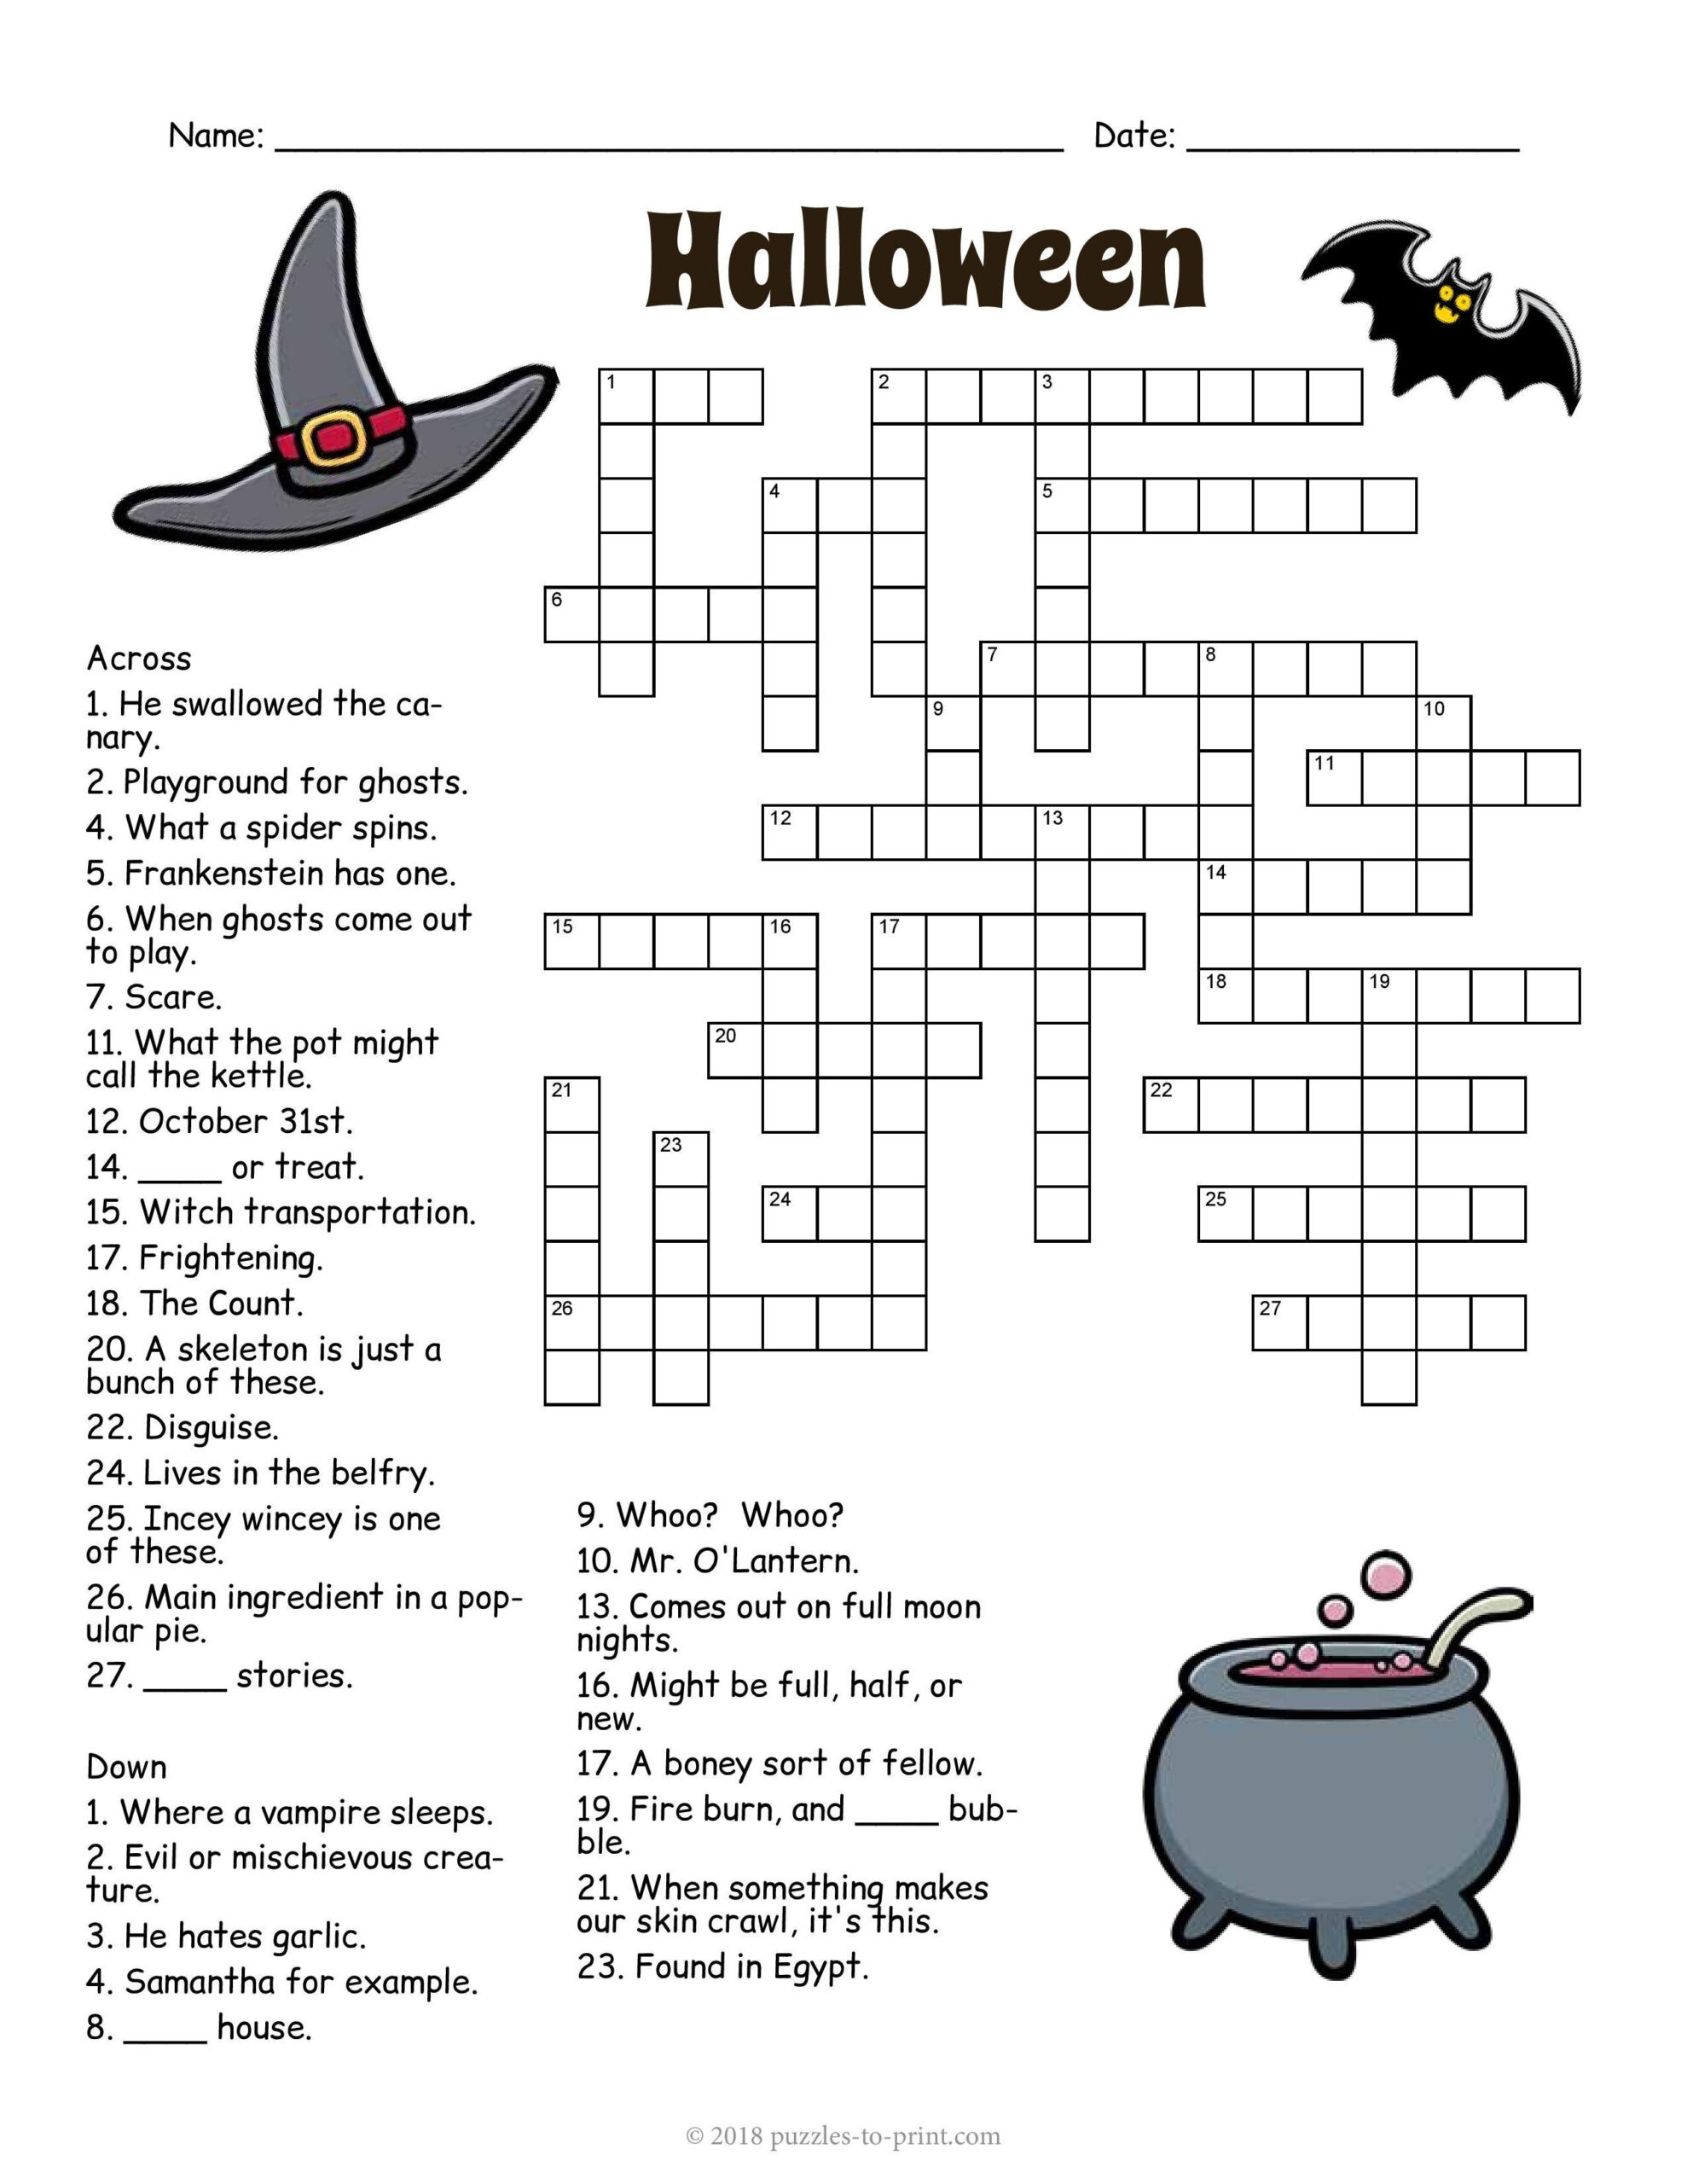 Halloween Crossword Word Puzzles For Kids Halloween Crossword 